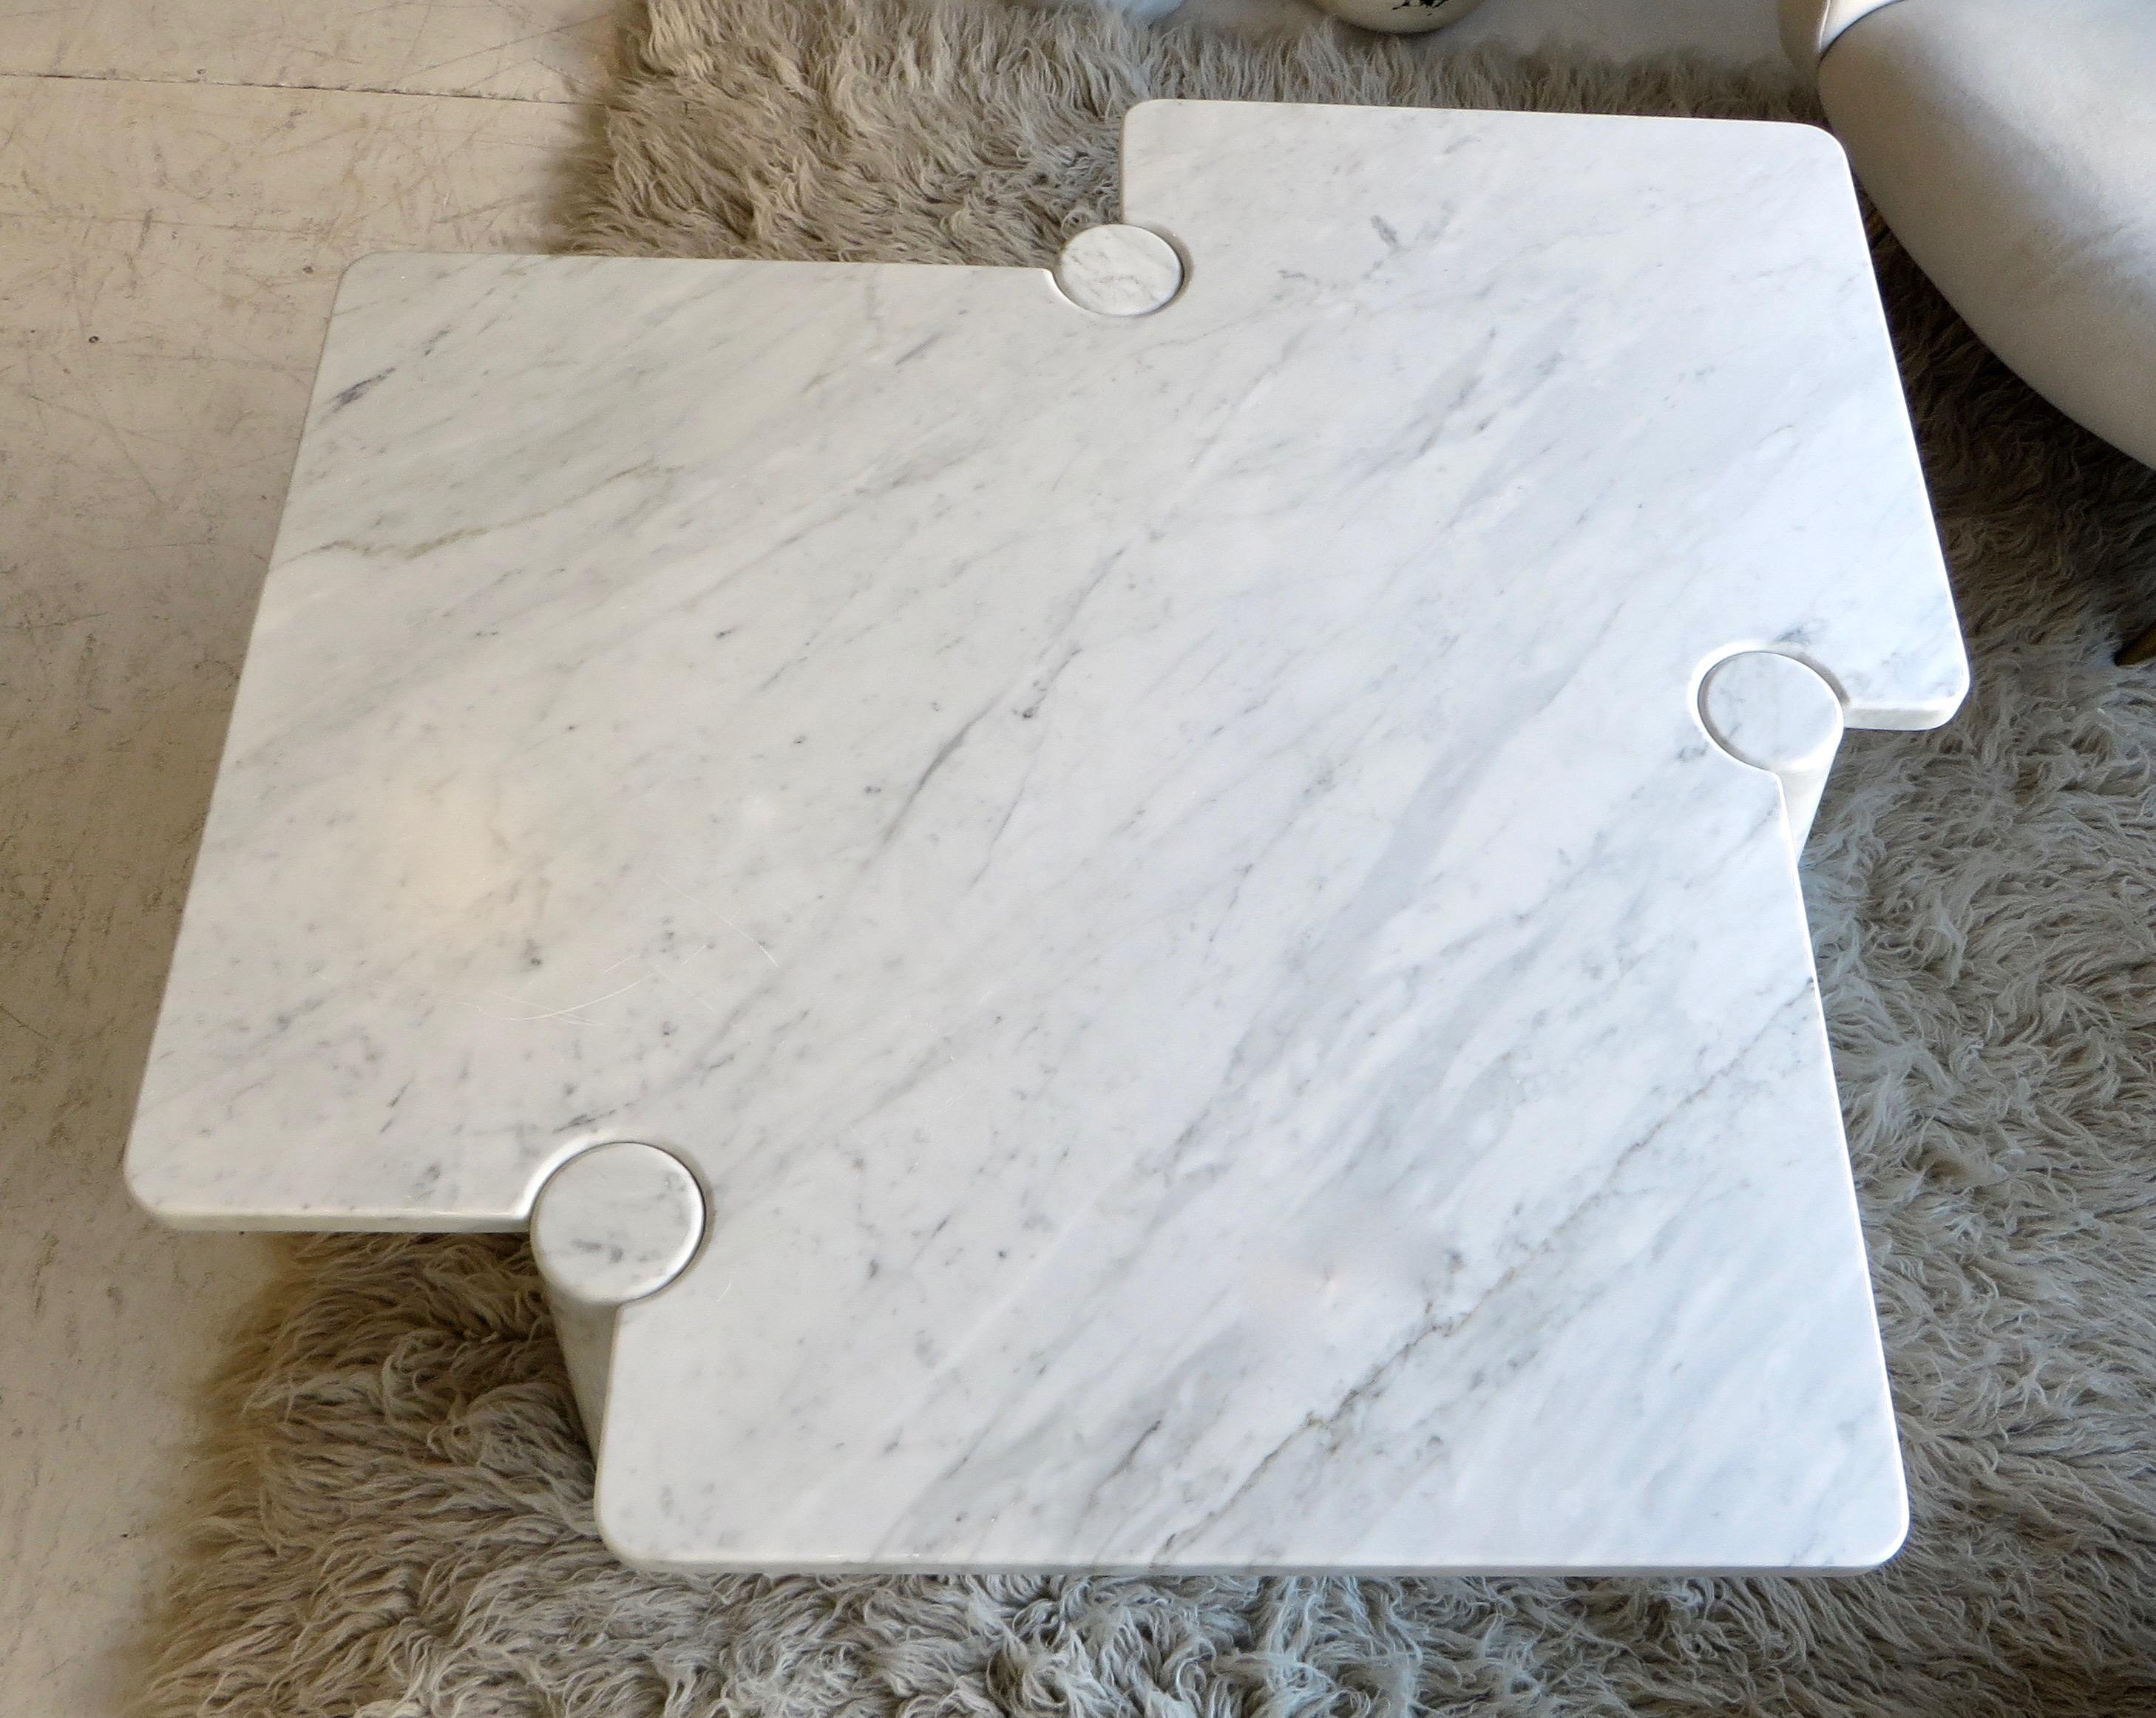 Angelo Mangiarotti Eros Collection Freccia White Carrara Marble Coffee Table 7